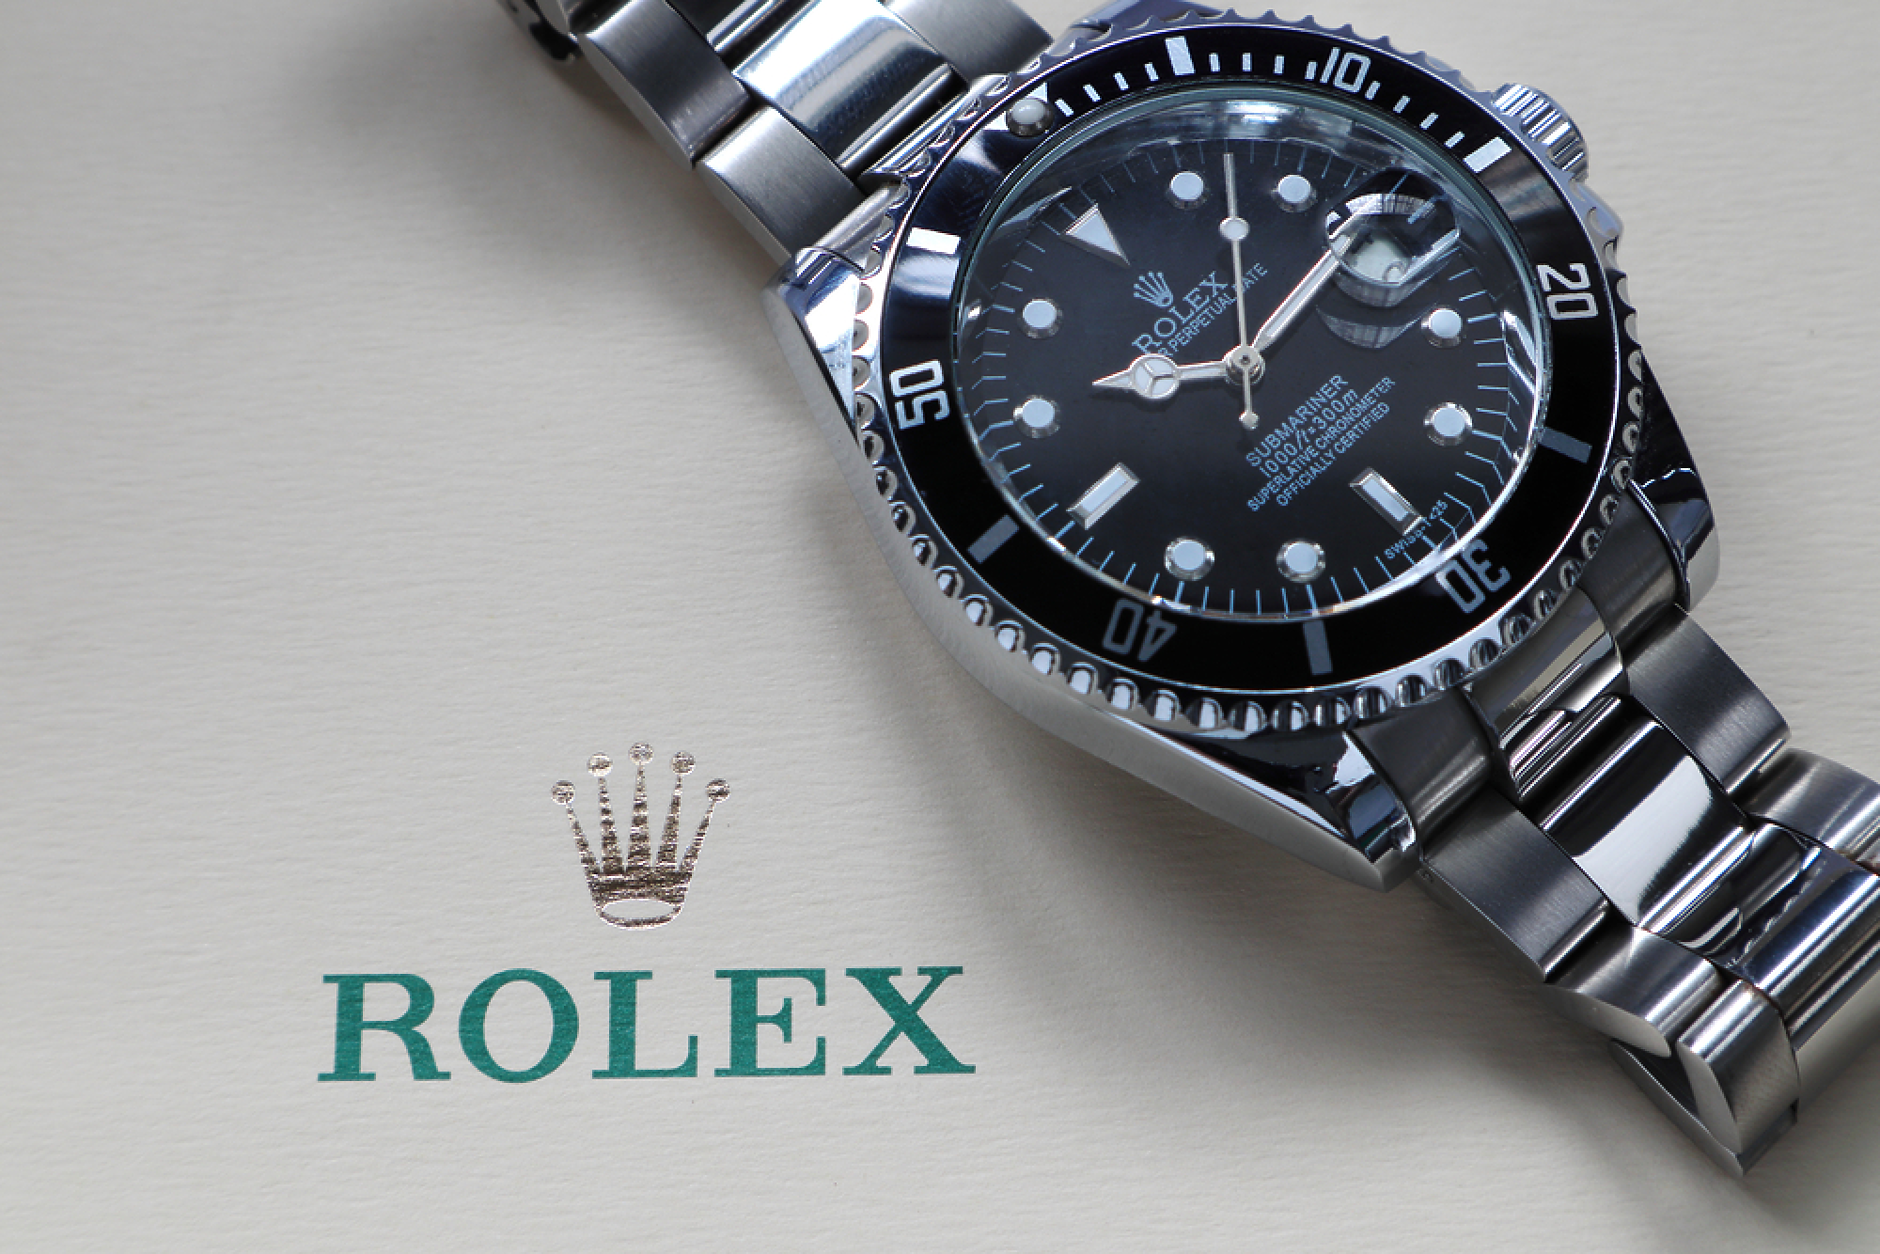  Rolex  строи три завода заради  нарасналото търсене на часовници